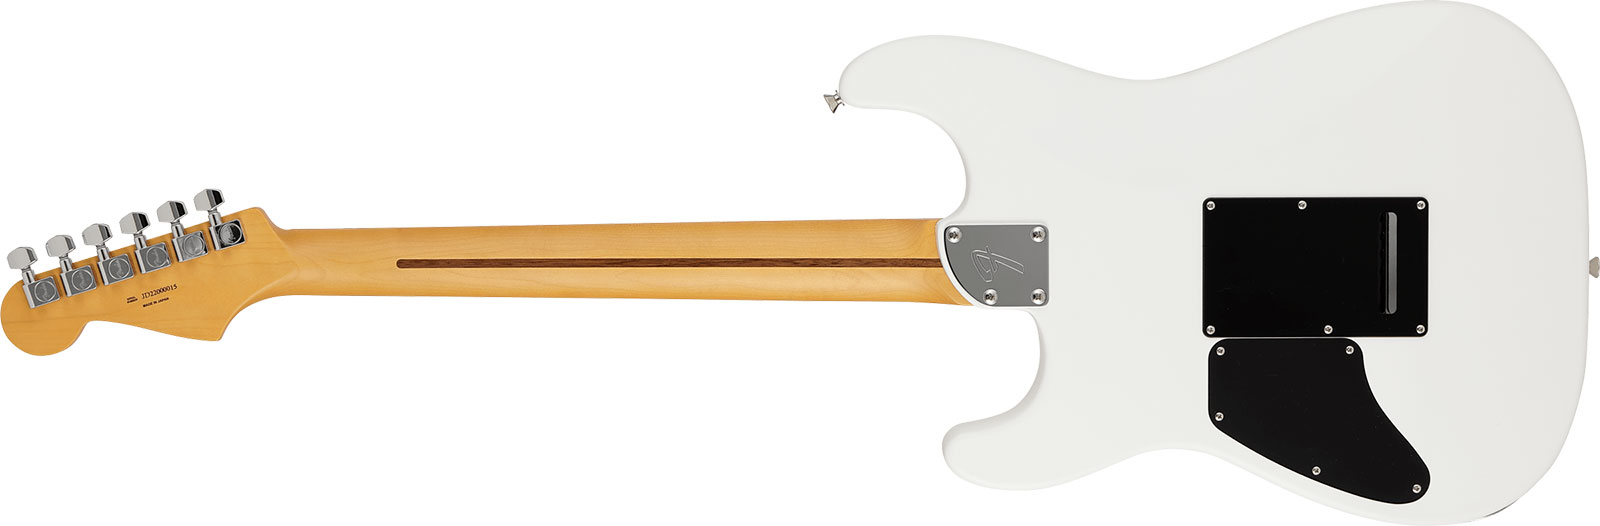 Fender Strat Elemental Mij Jap 2h Trem Rw - Nimbus White - Guitare Électrique Forme Str - Variation 1